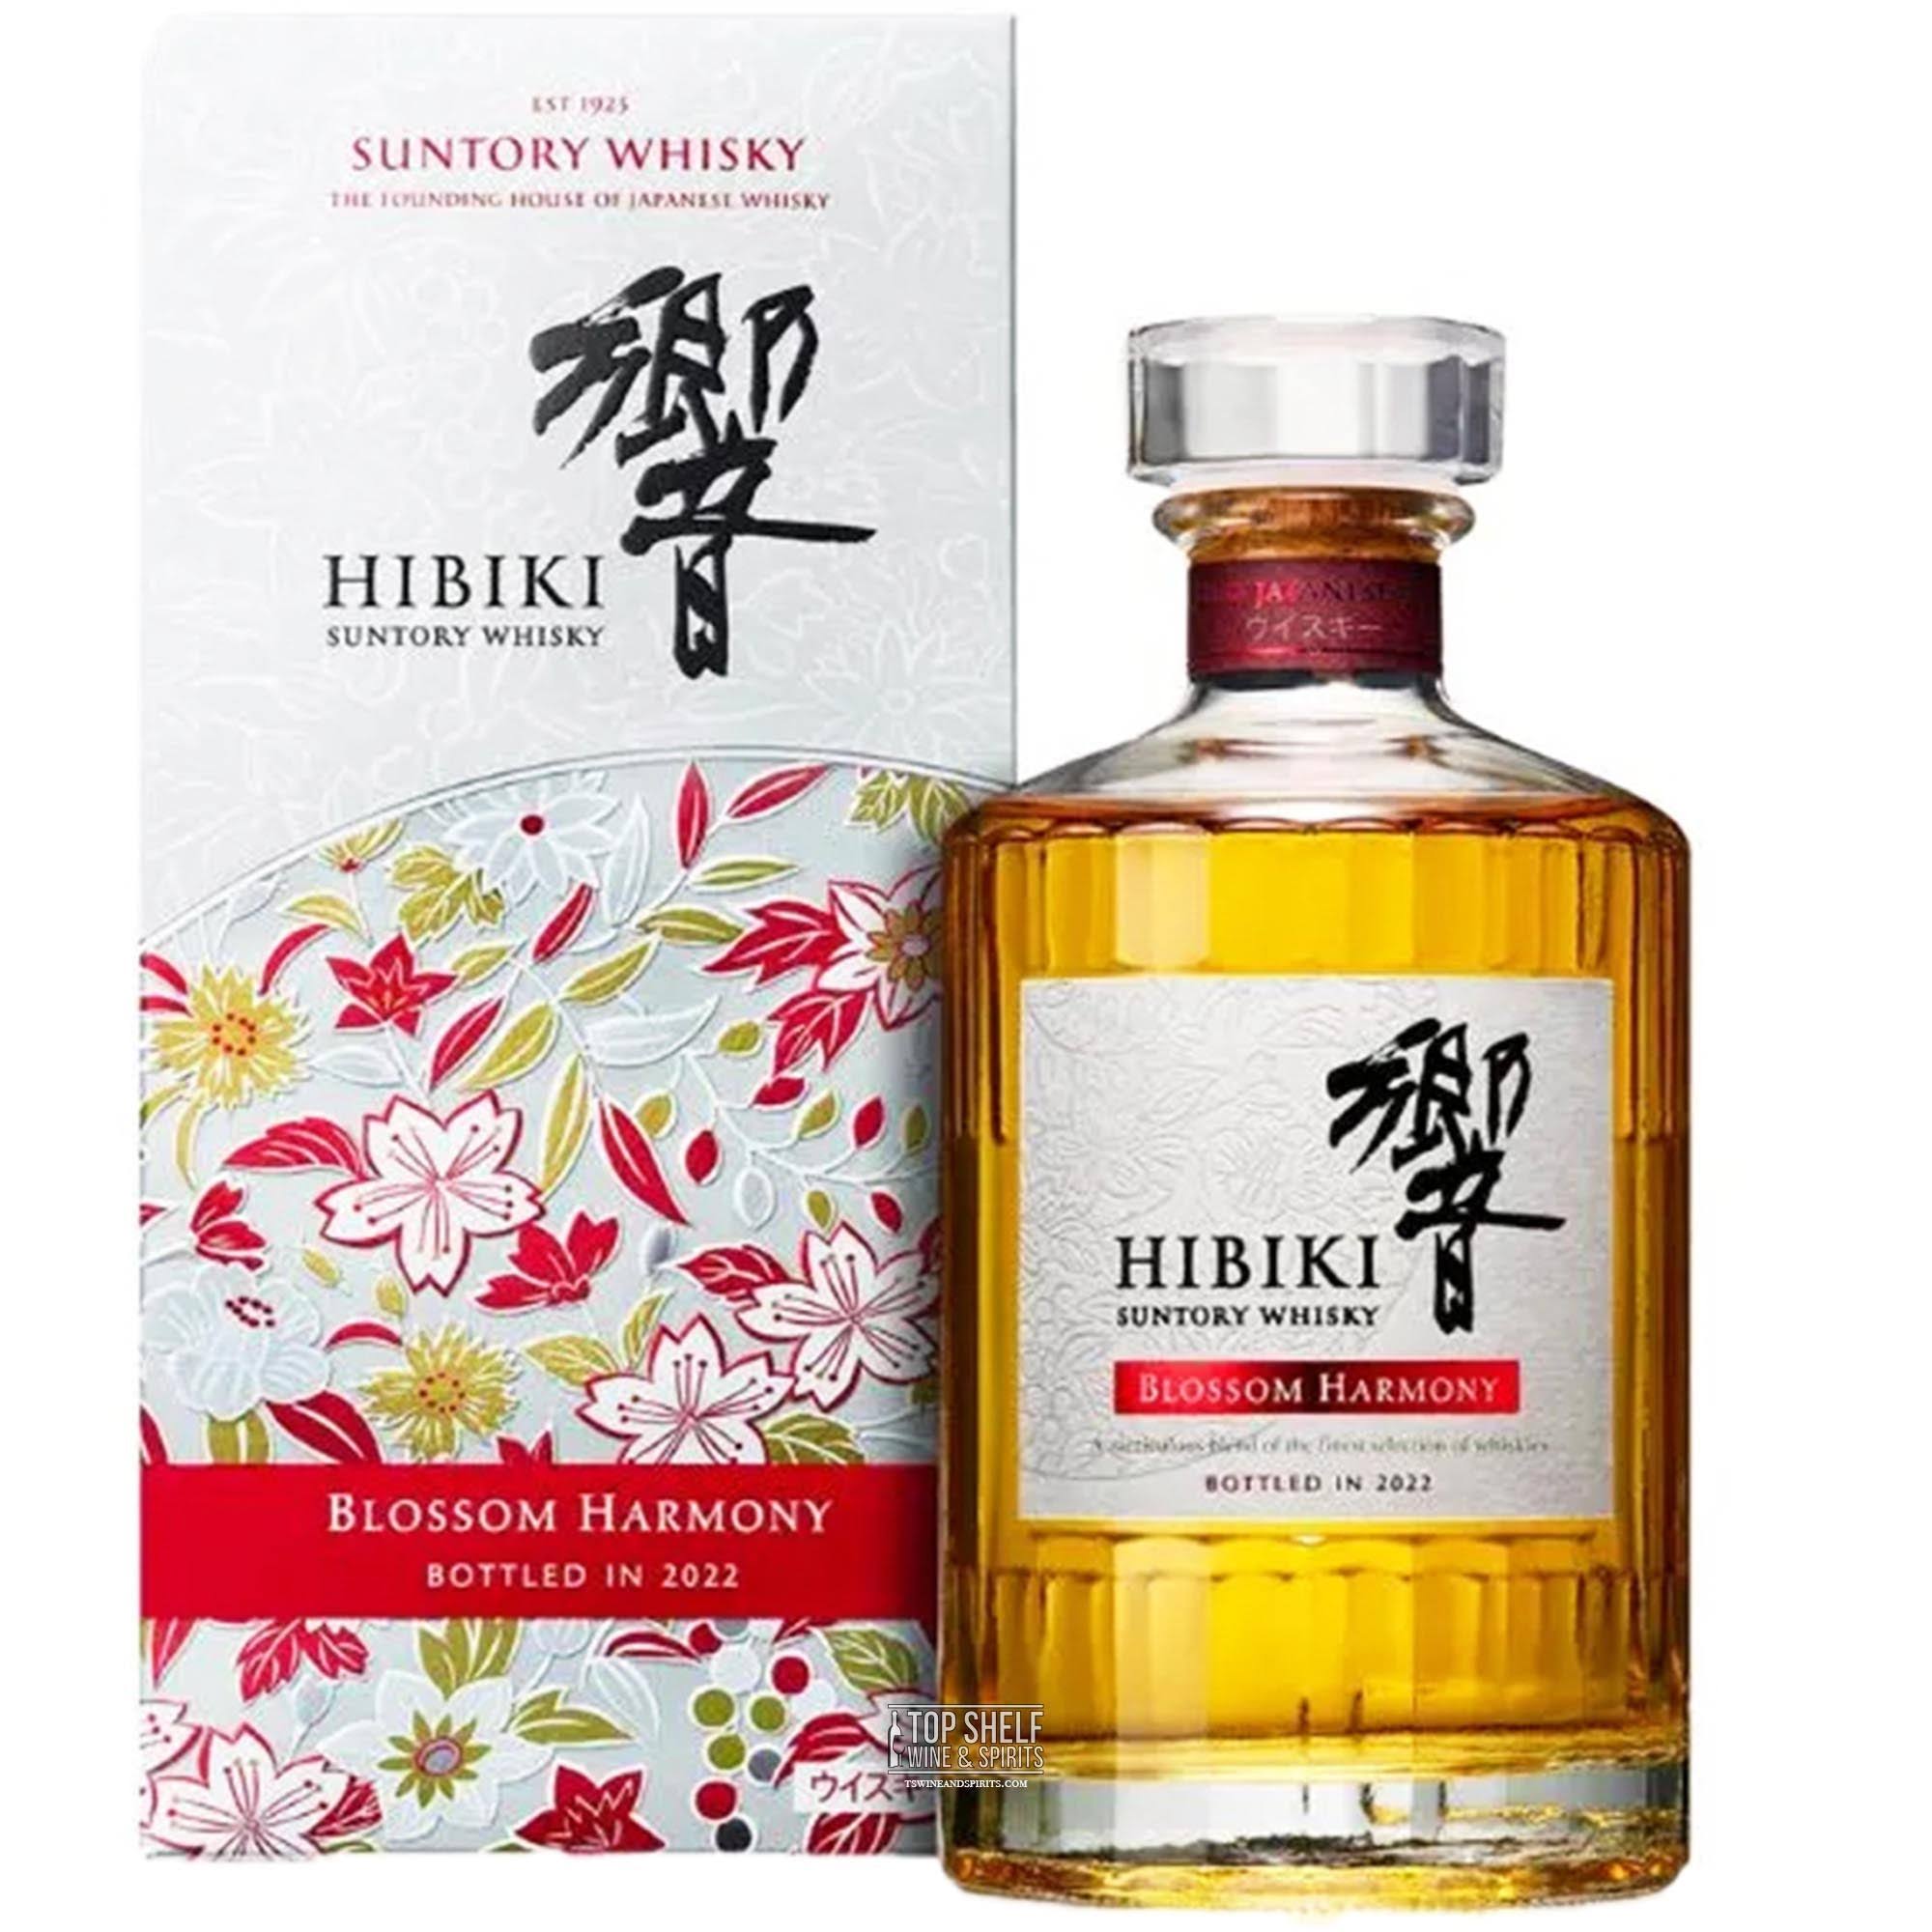 Hibiki ‘Blossom Harmony’ Whisky 70cl